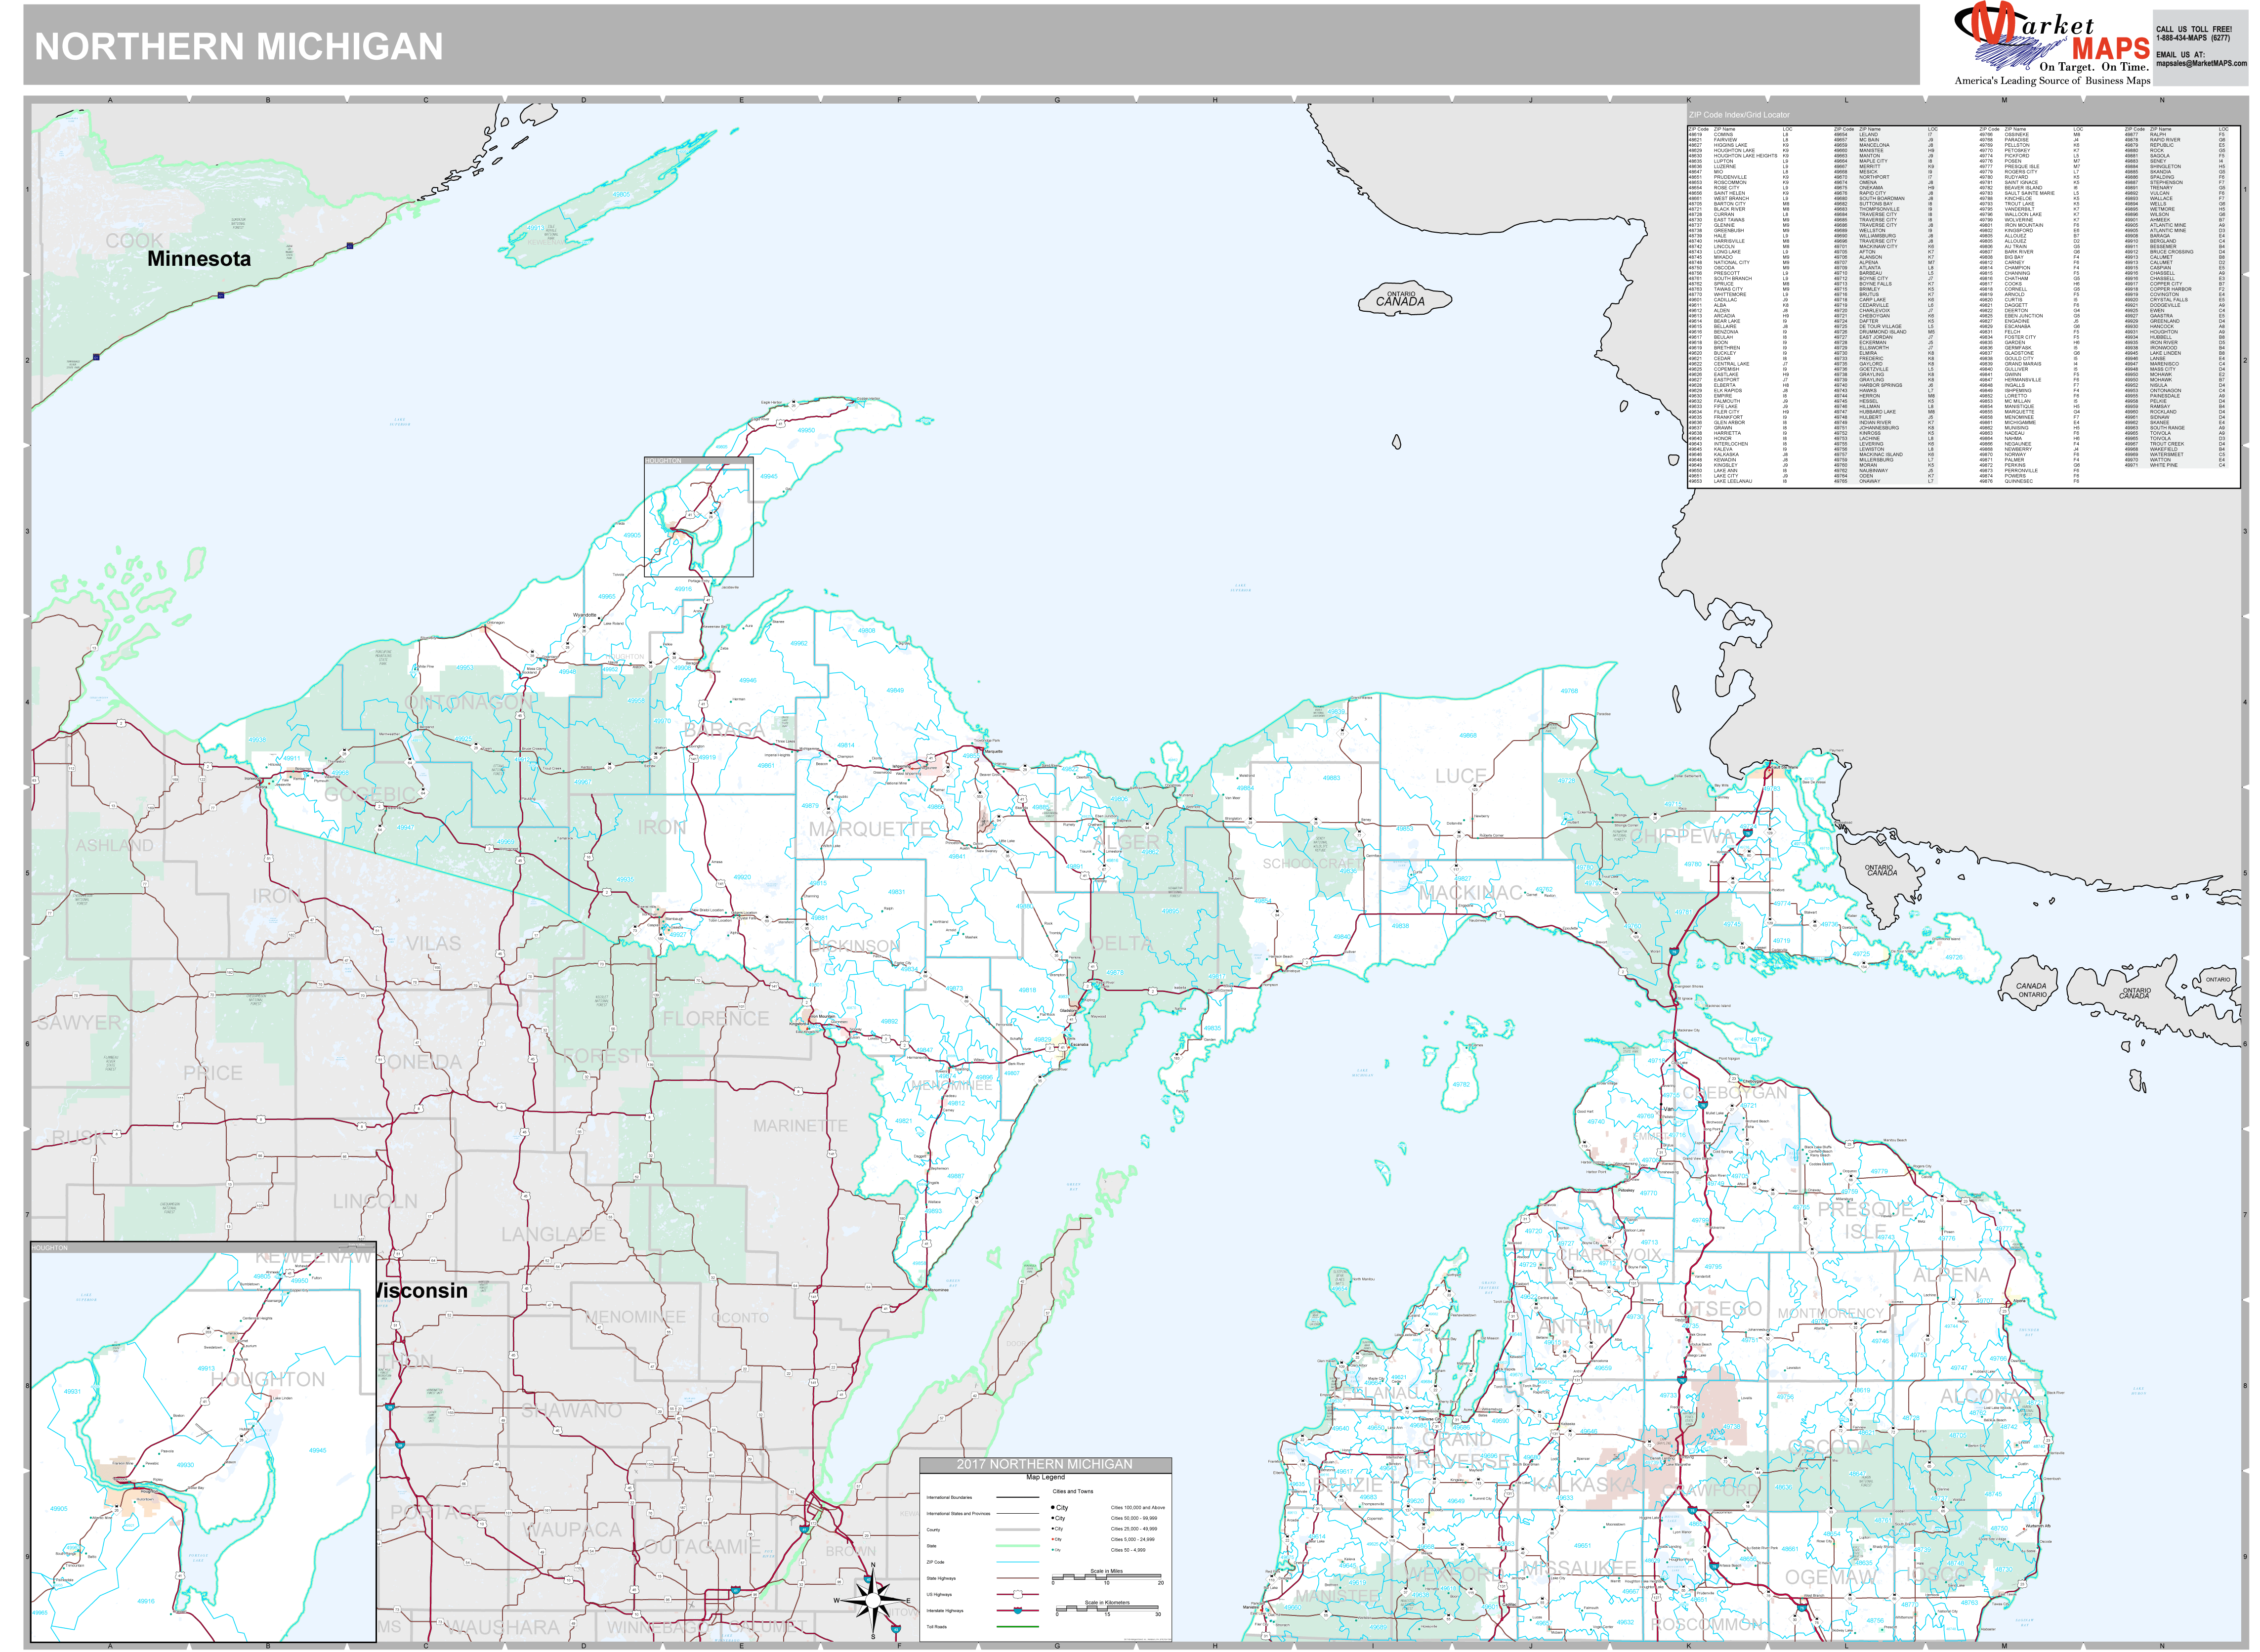 Michigan Wall Map Premium Style By Marketmaps Mapsale 5772